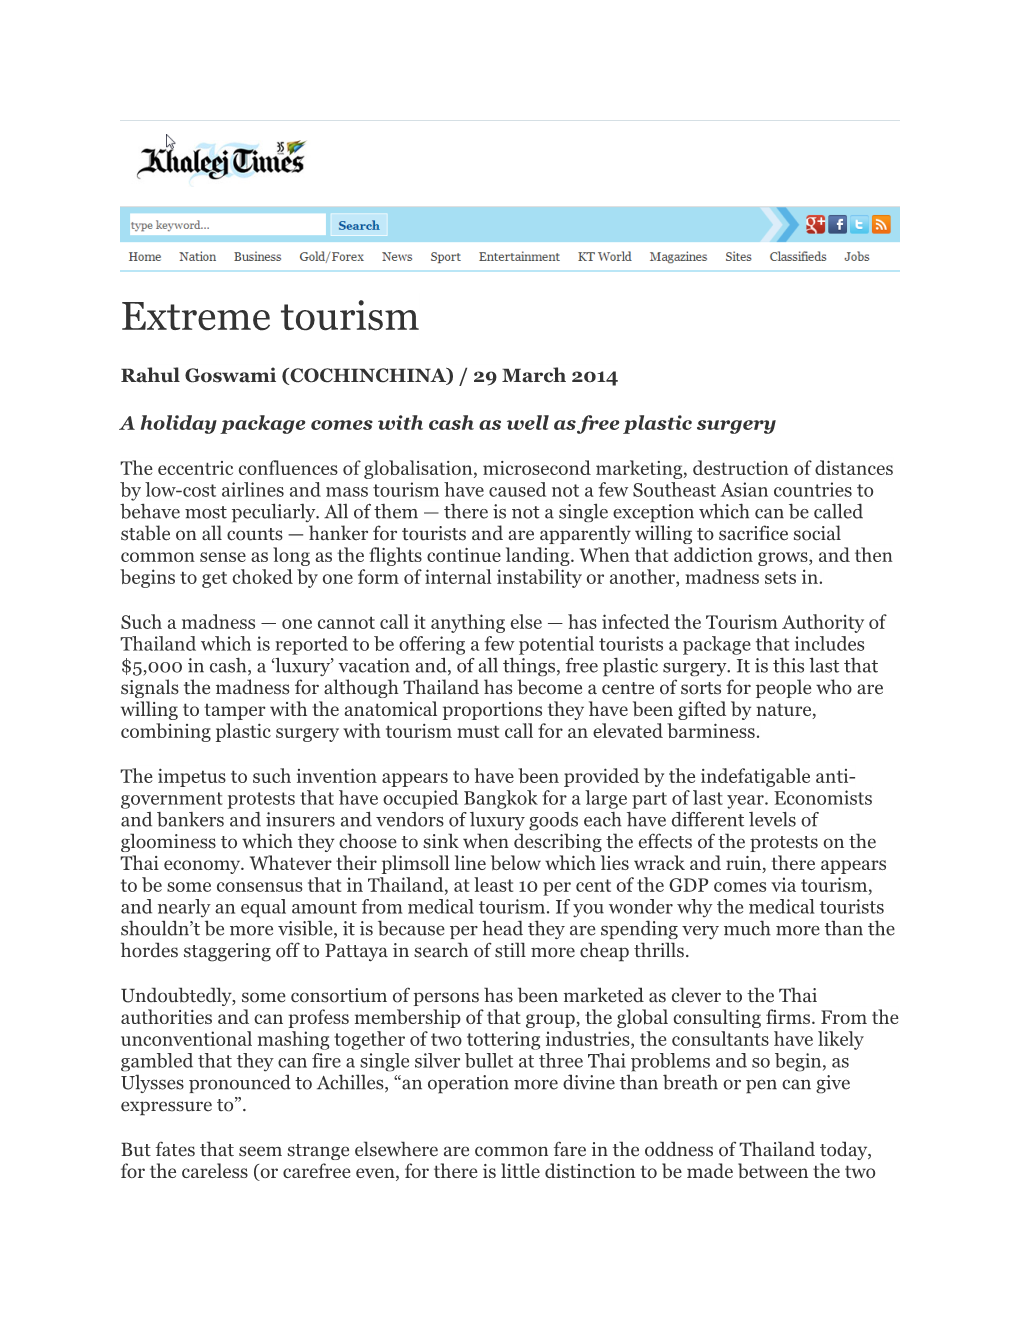 Extreme Tourism